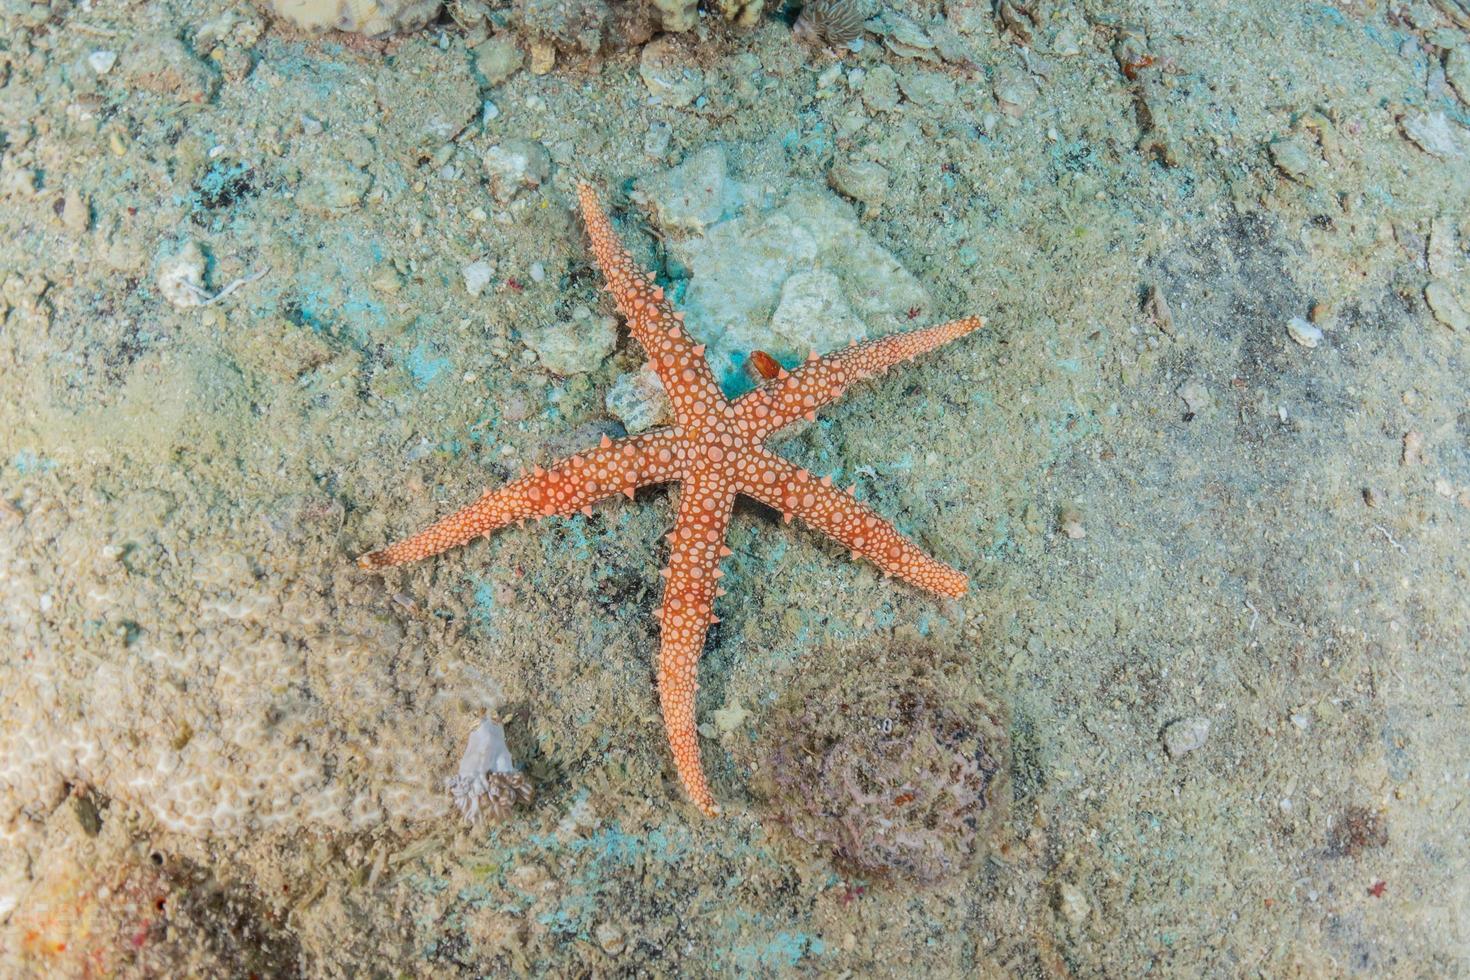 étoile de mer sur les fonds marins de la mer rouge, eilat israël photo